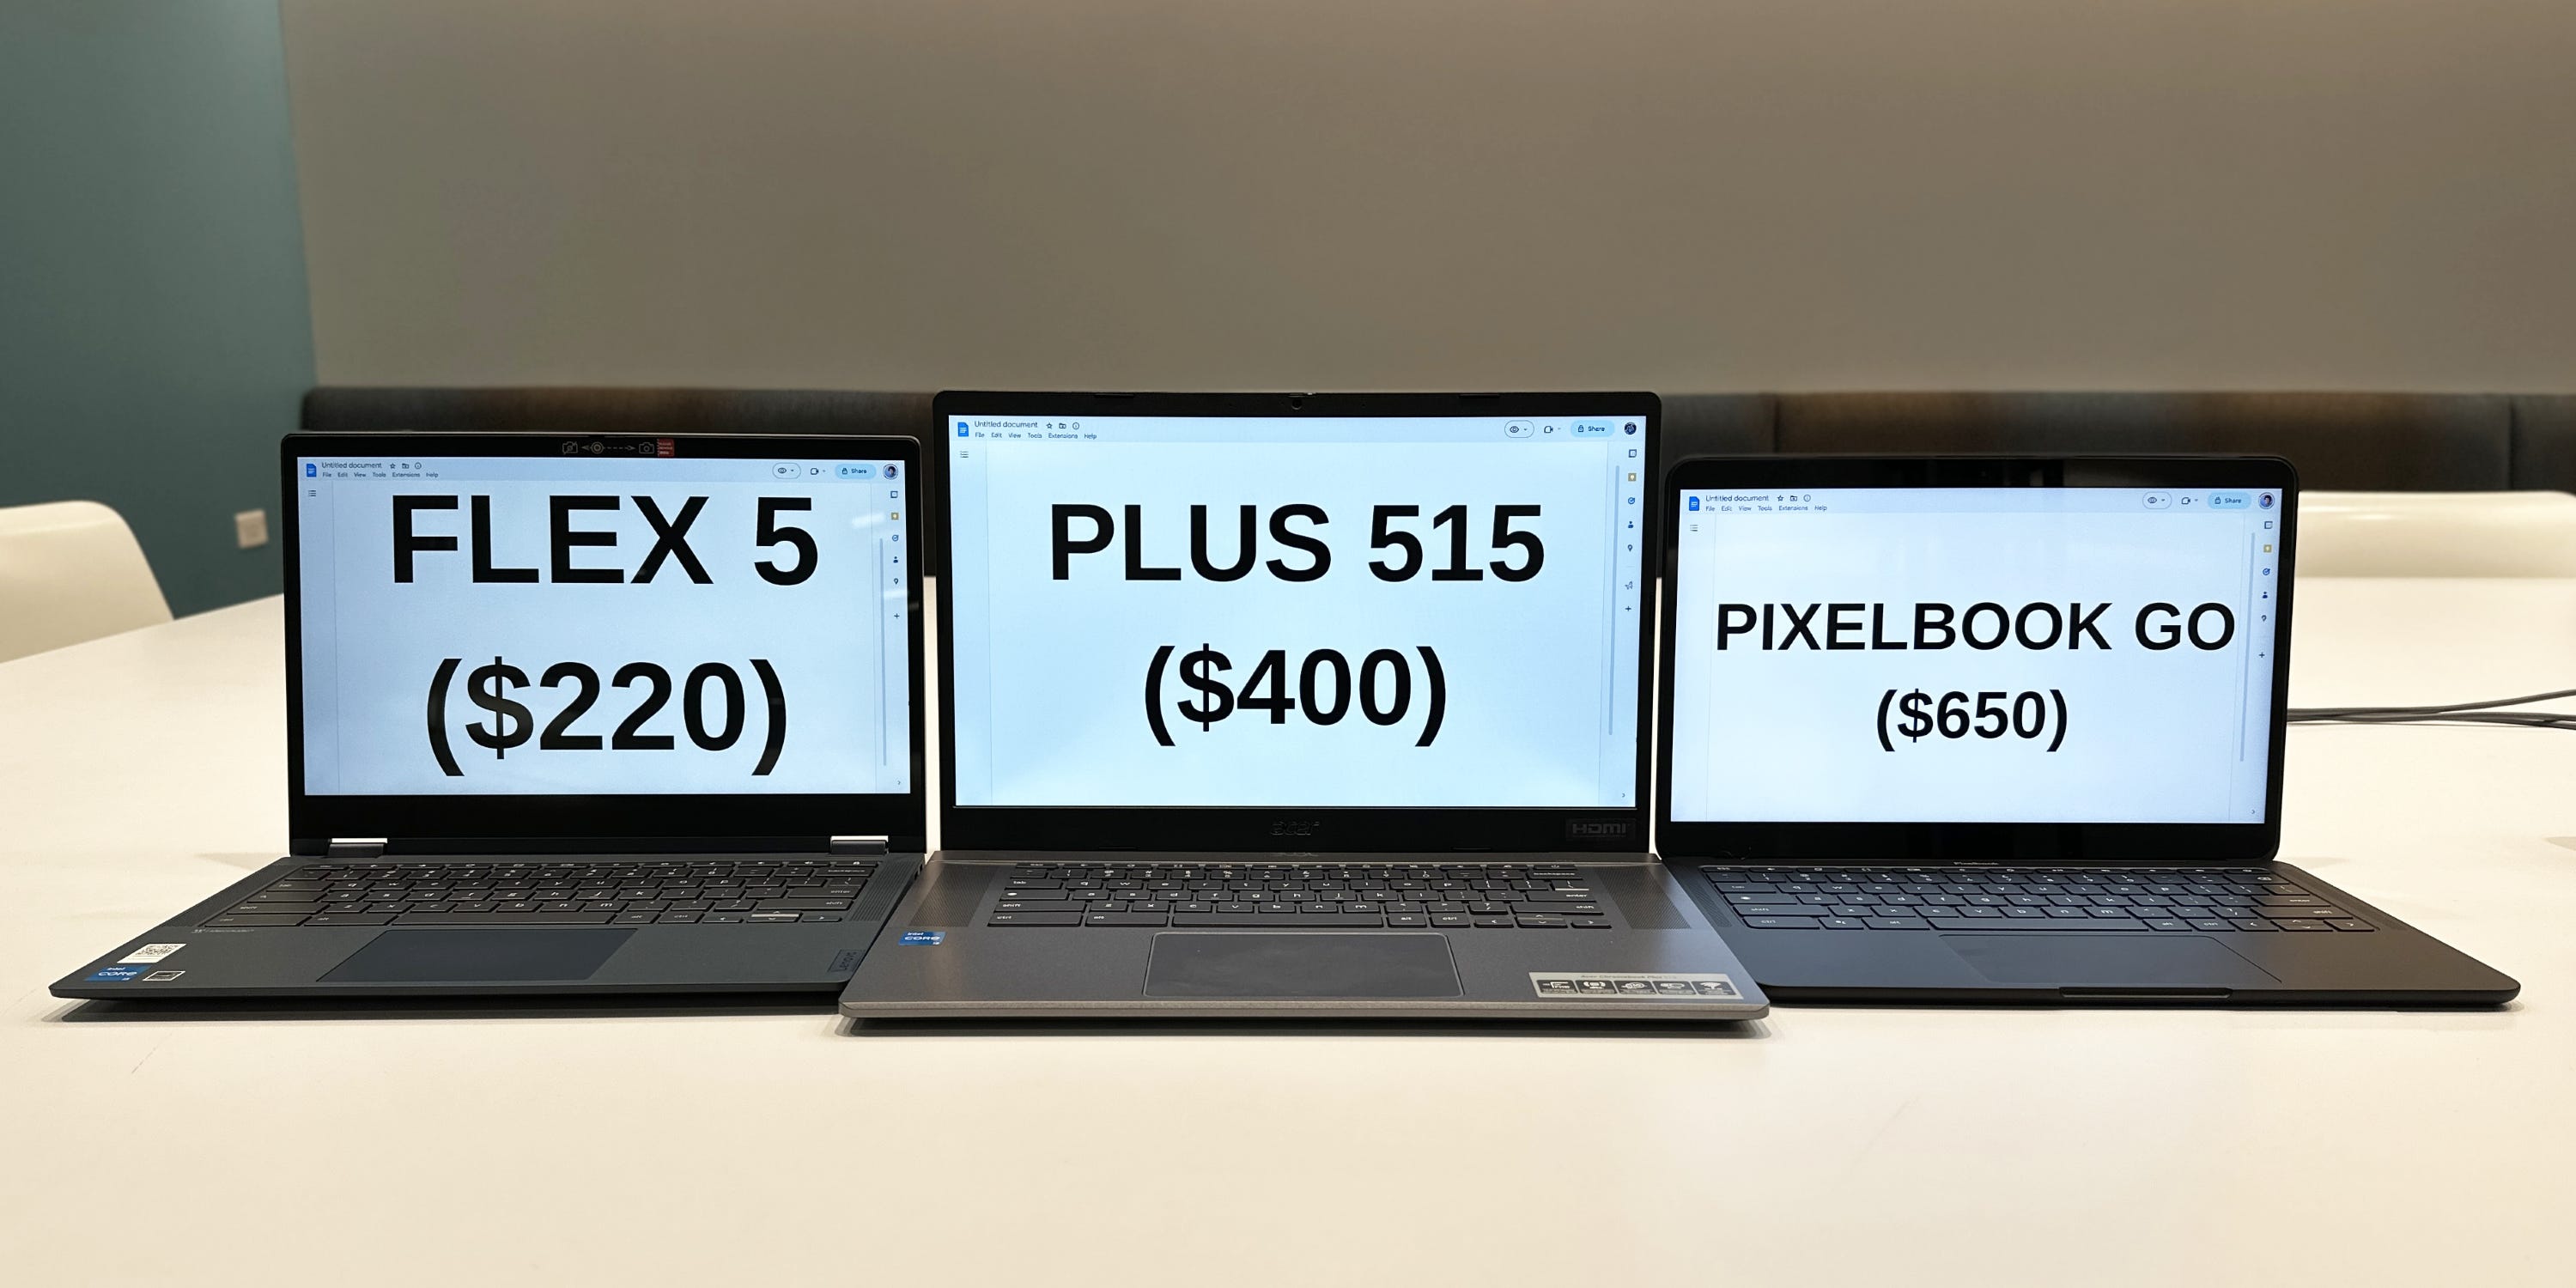 Ein Lenovo Flex 5, ein Acer Plus 515 und ein Google Pixelbook Go sitzen nebeneinander.  Auf jedem Chromebook werden der Name und der Preis des Modells angezeigt.